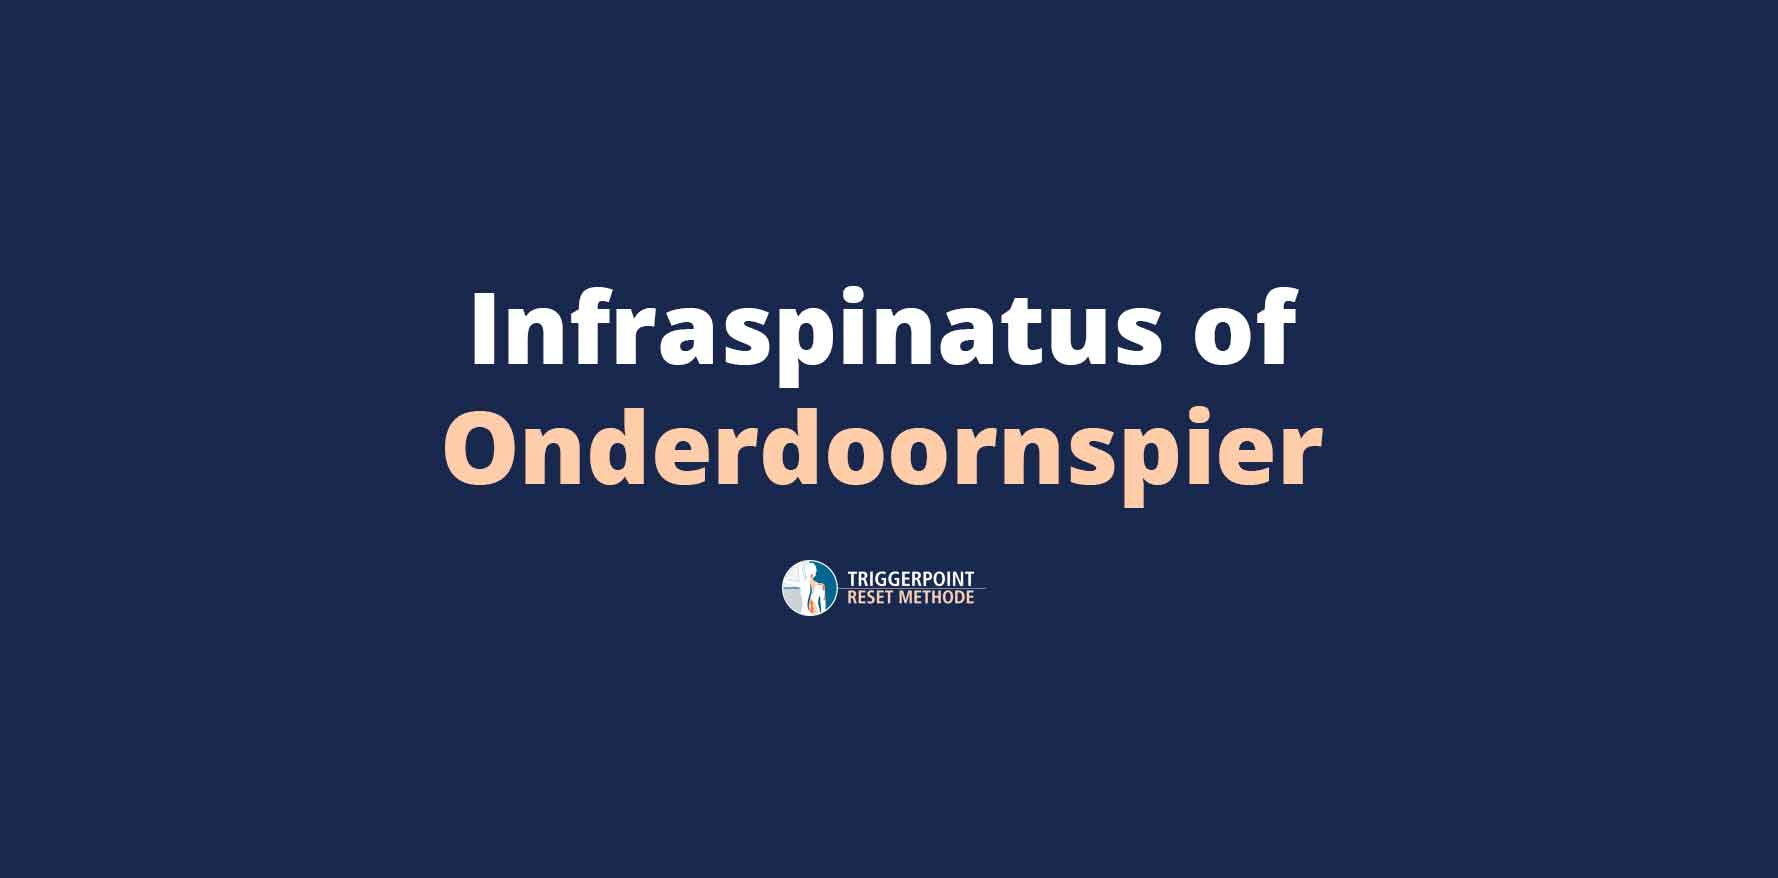 Infraspinatus of onderdoornspier